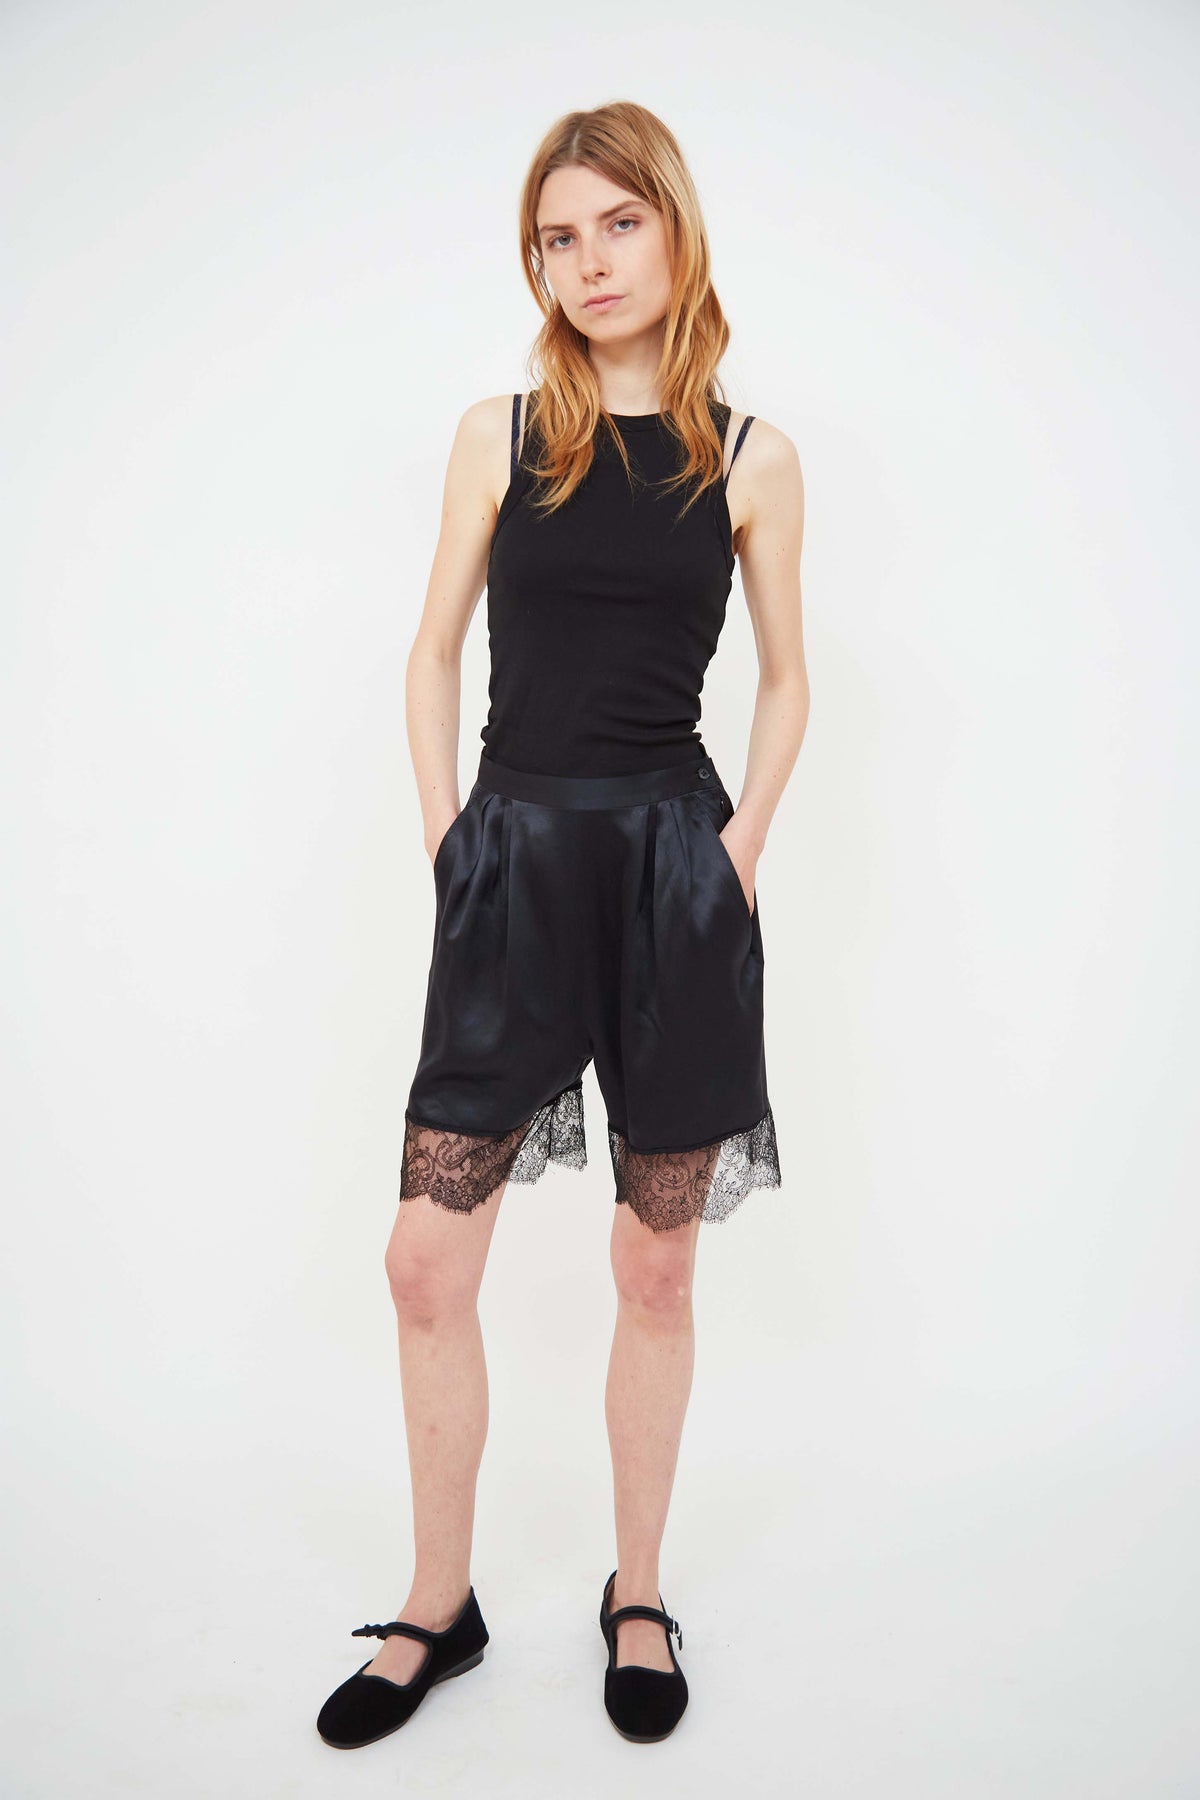 Yves Saint Laurent silk shorts